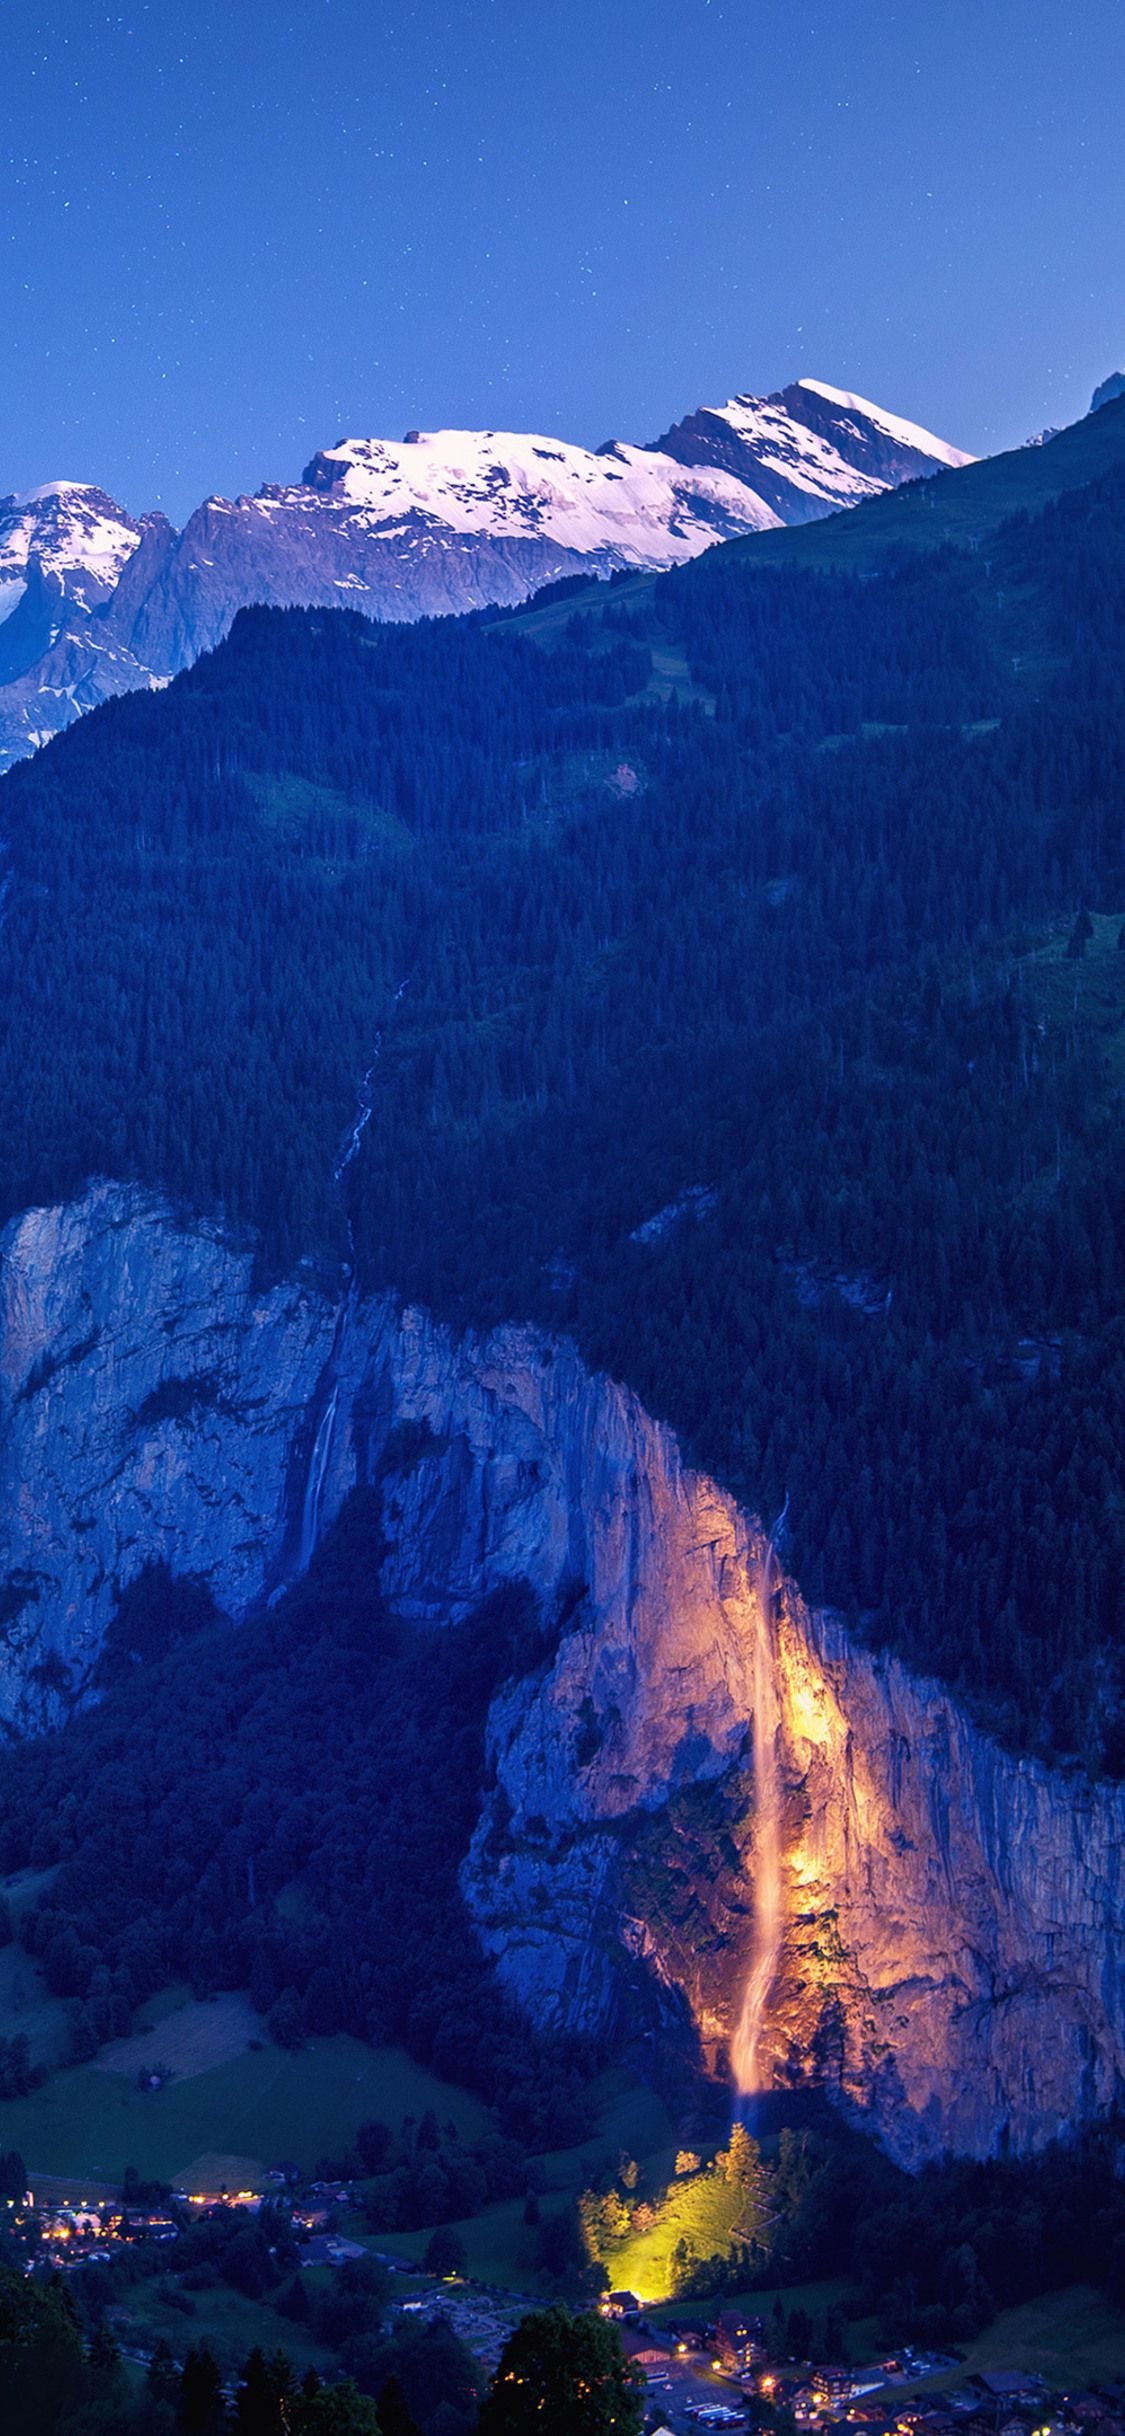 خوشگل ترین بک گراند طبیعت بکر سوئیس با کیفیت دیدنی 